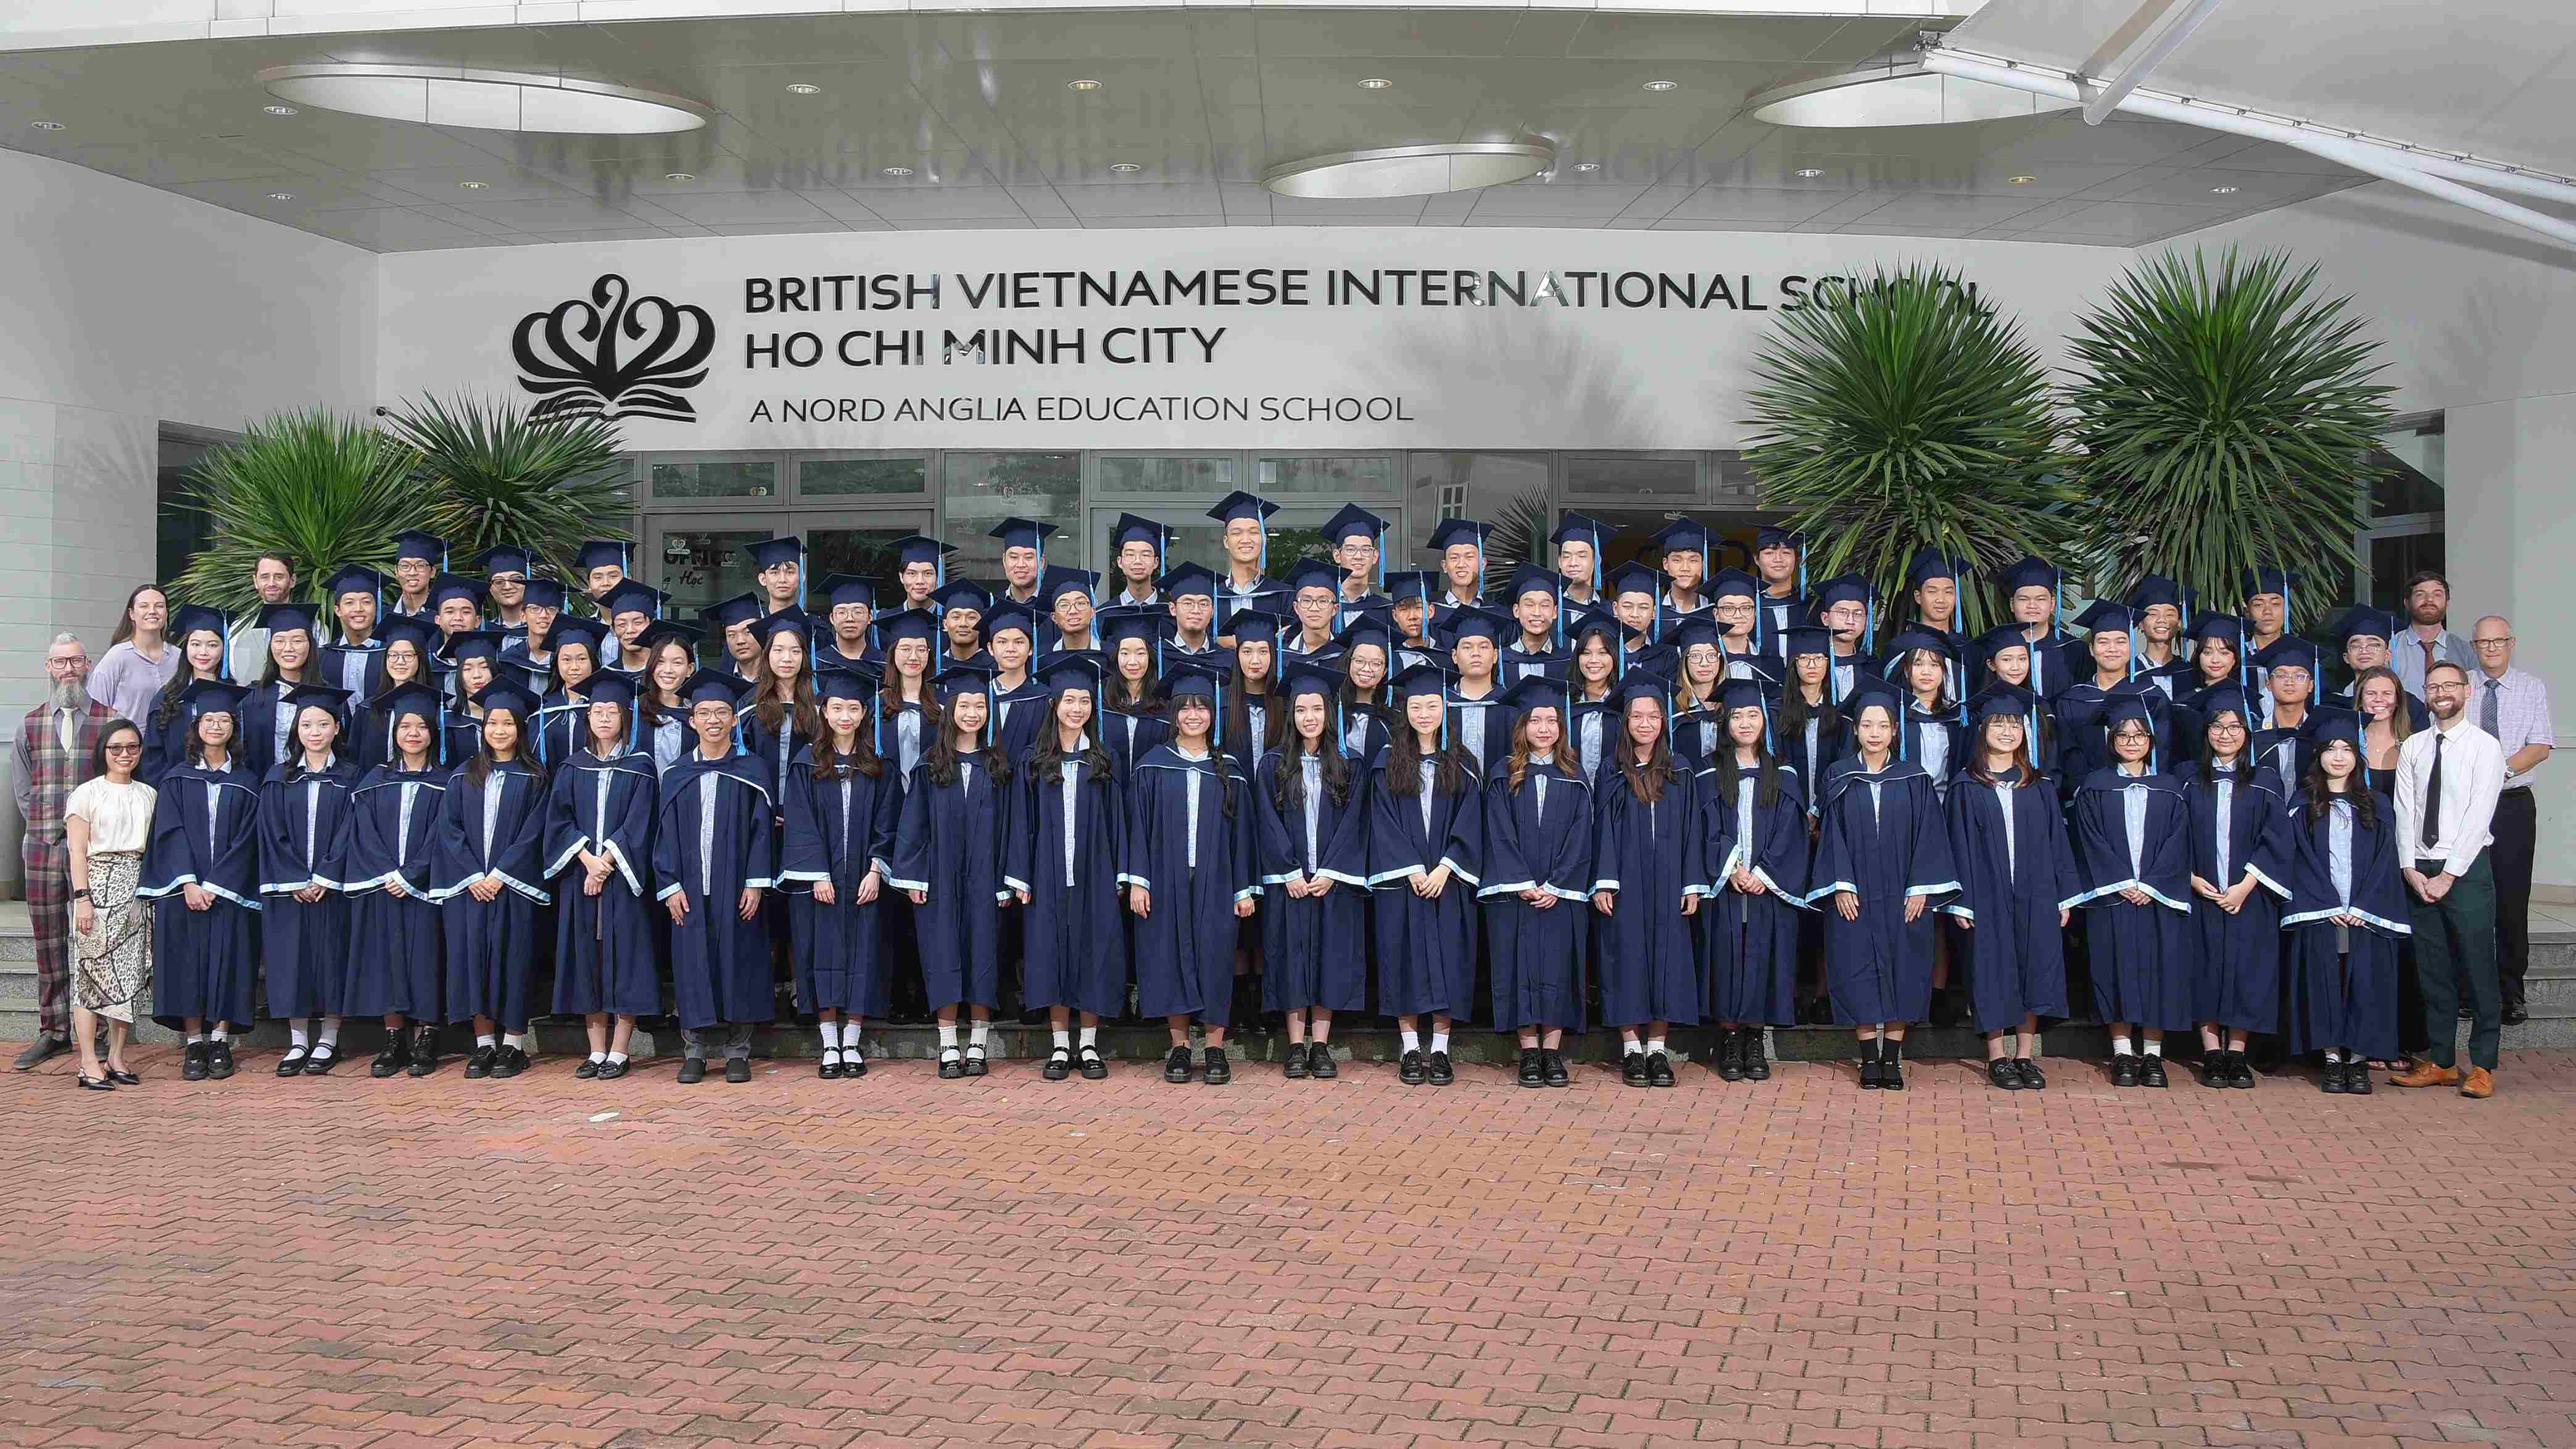 Niên khóa 2024: 1 trong 2 học sinh tốt nghiệp tại BVIS trúng tuyển vào đại học Top 50 thế giới - Class of 2024 1 in 2 BVIS graduates accepted into the top 50 universities worldwide